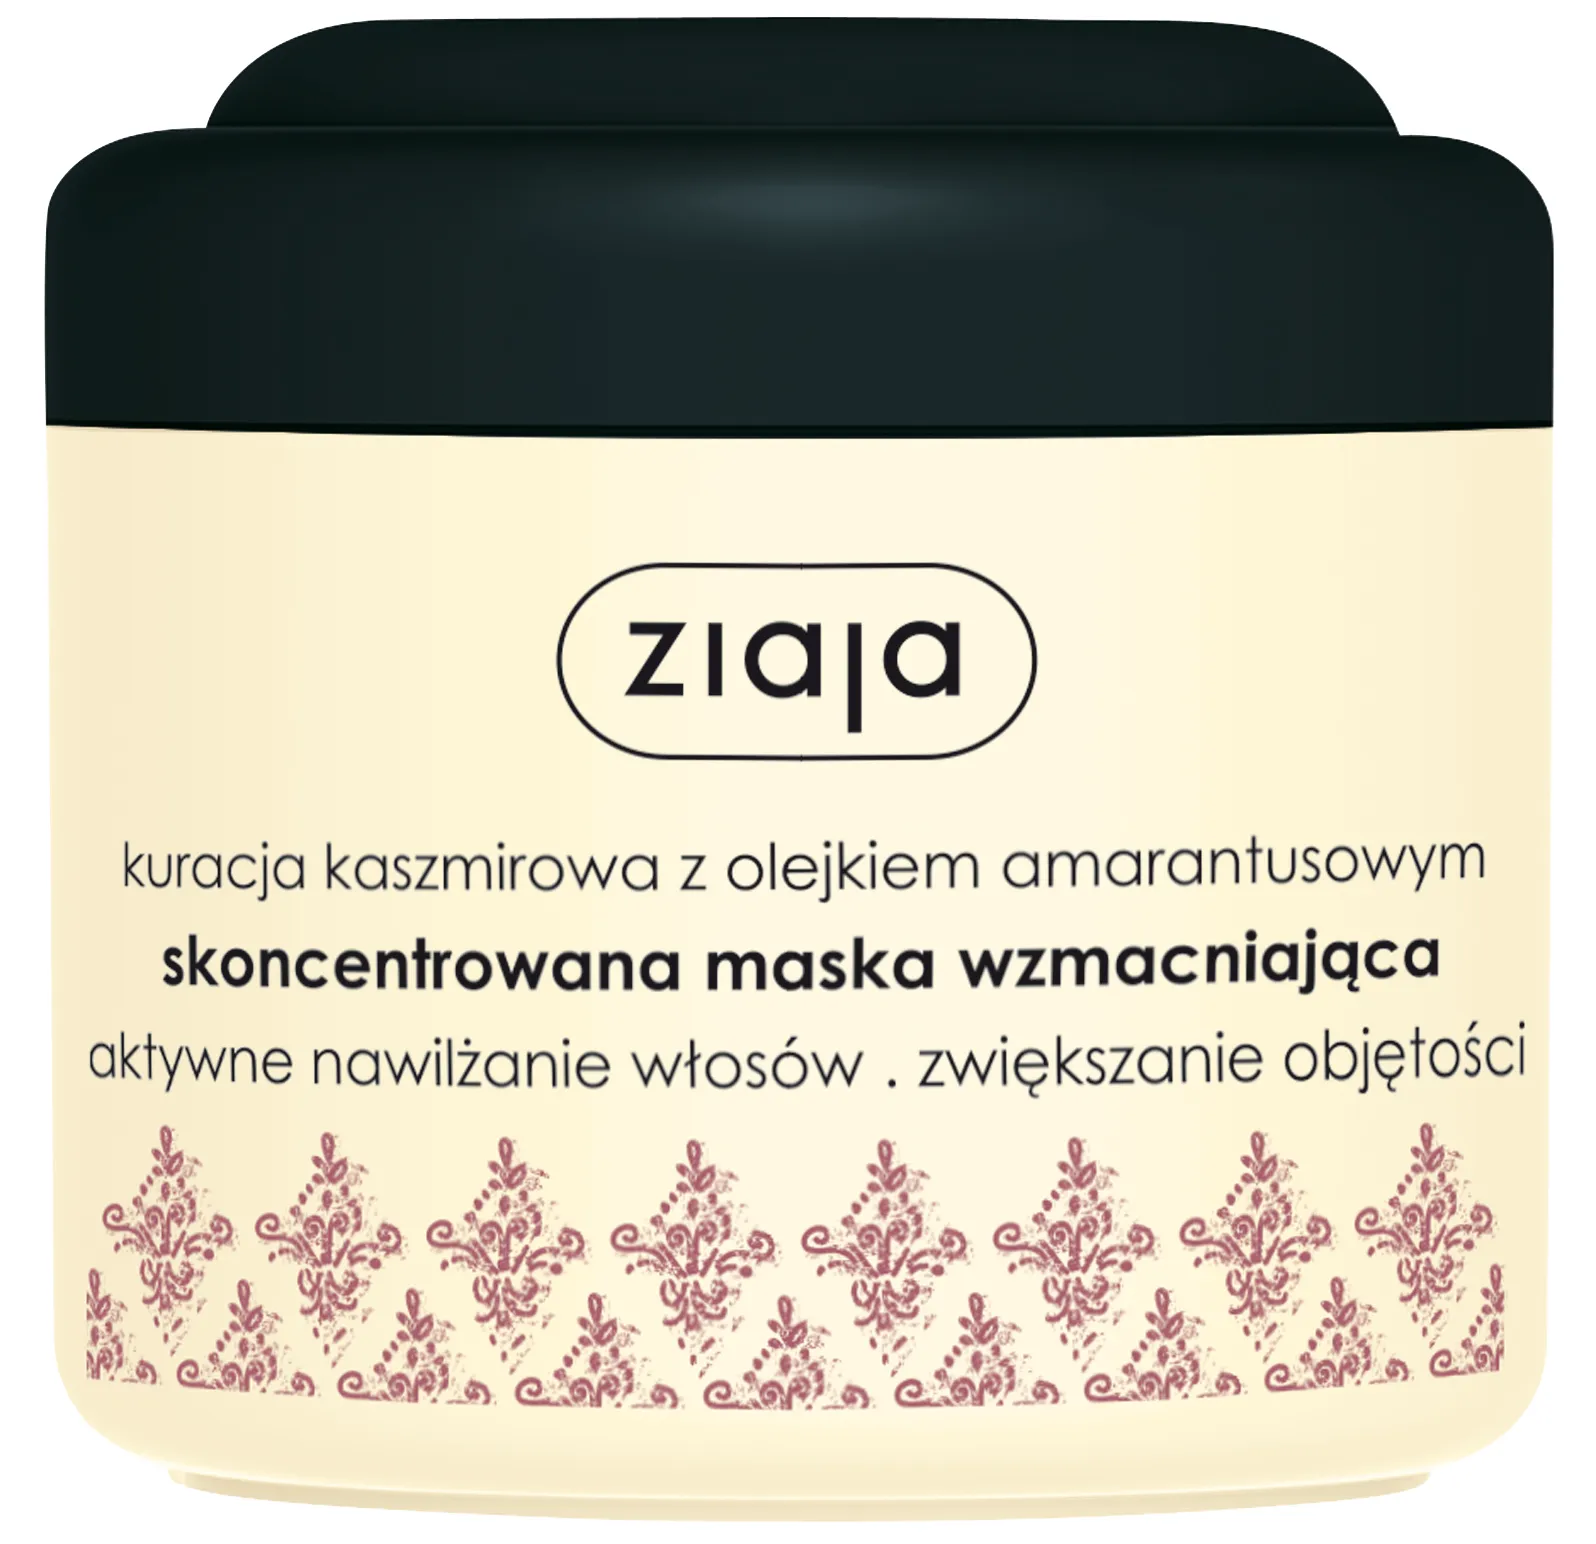 Ziaja Kaszmirowa, maska do włosów wzmacniająca, 200 ml